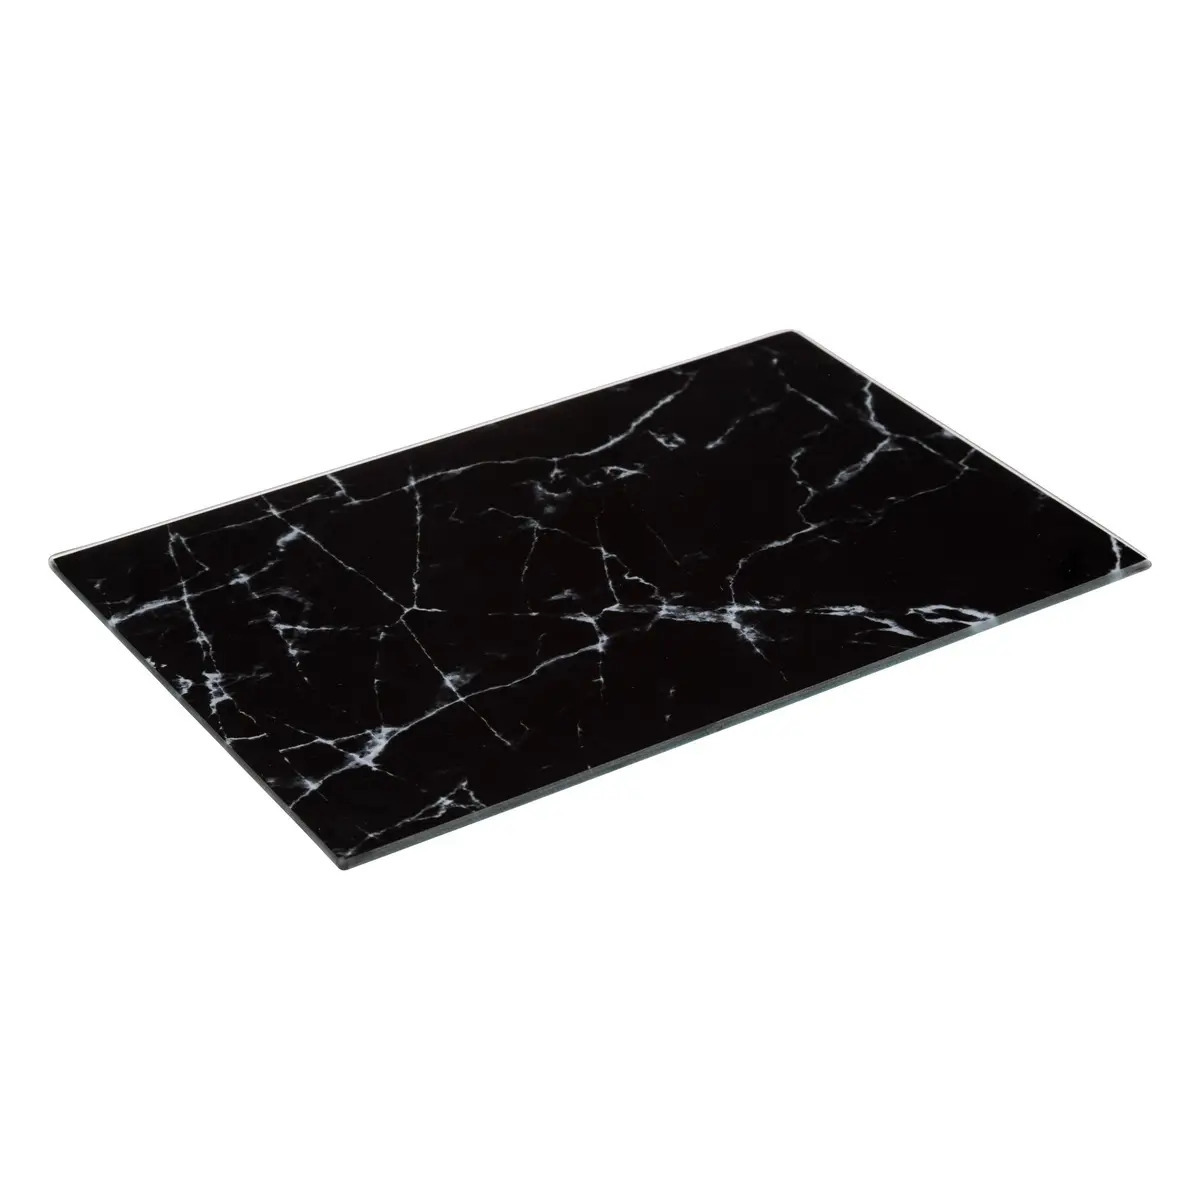 5five snijplank/serveerplank van glas - rechthoek - zwart met marmer print - 30 x 20 cm -